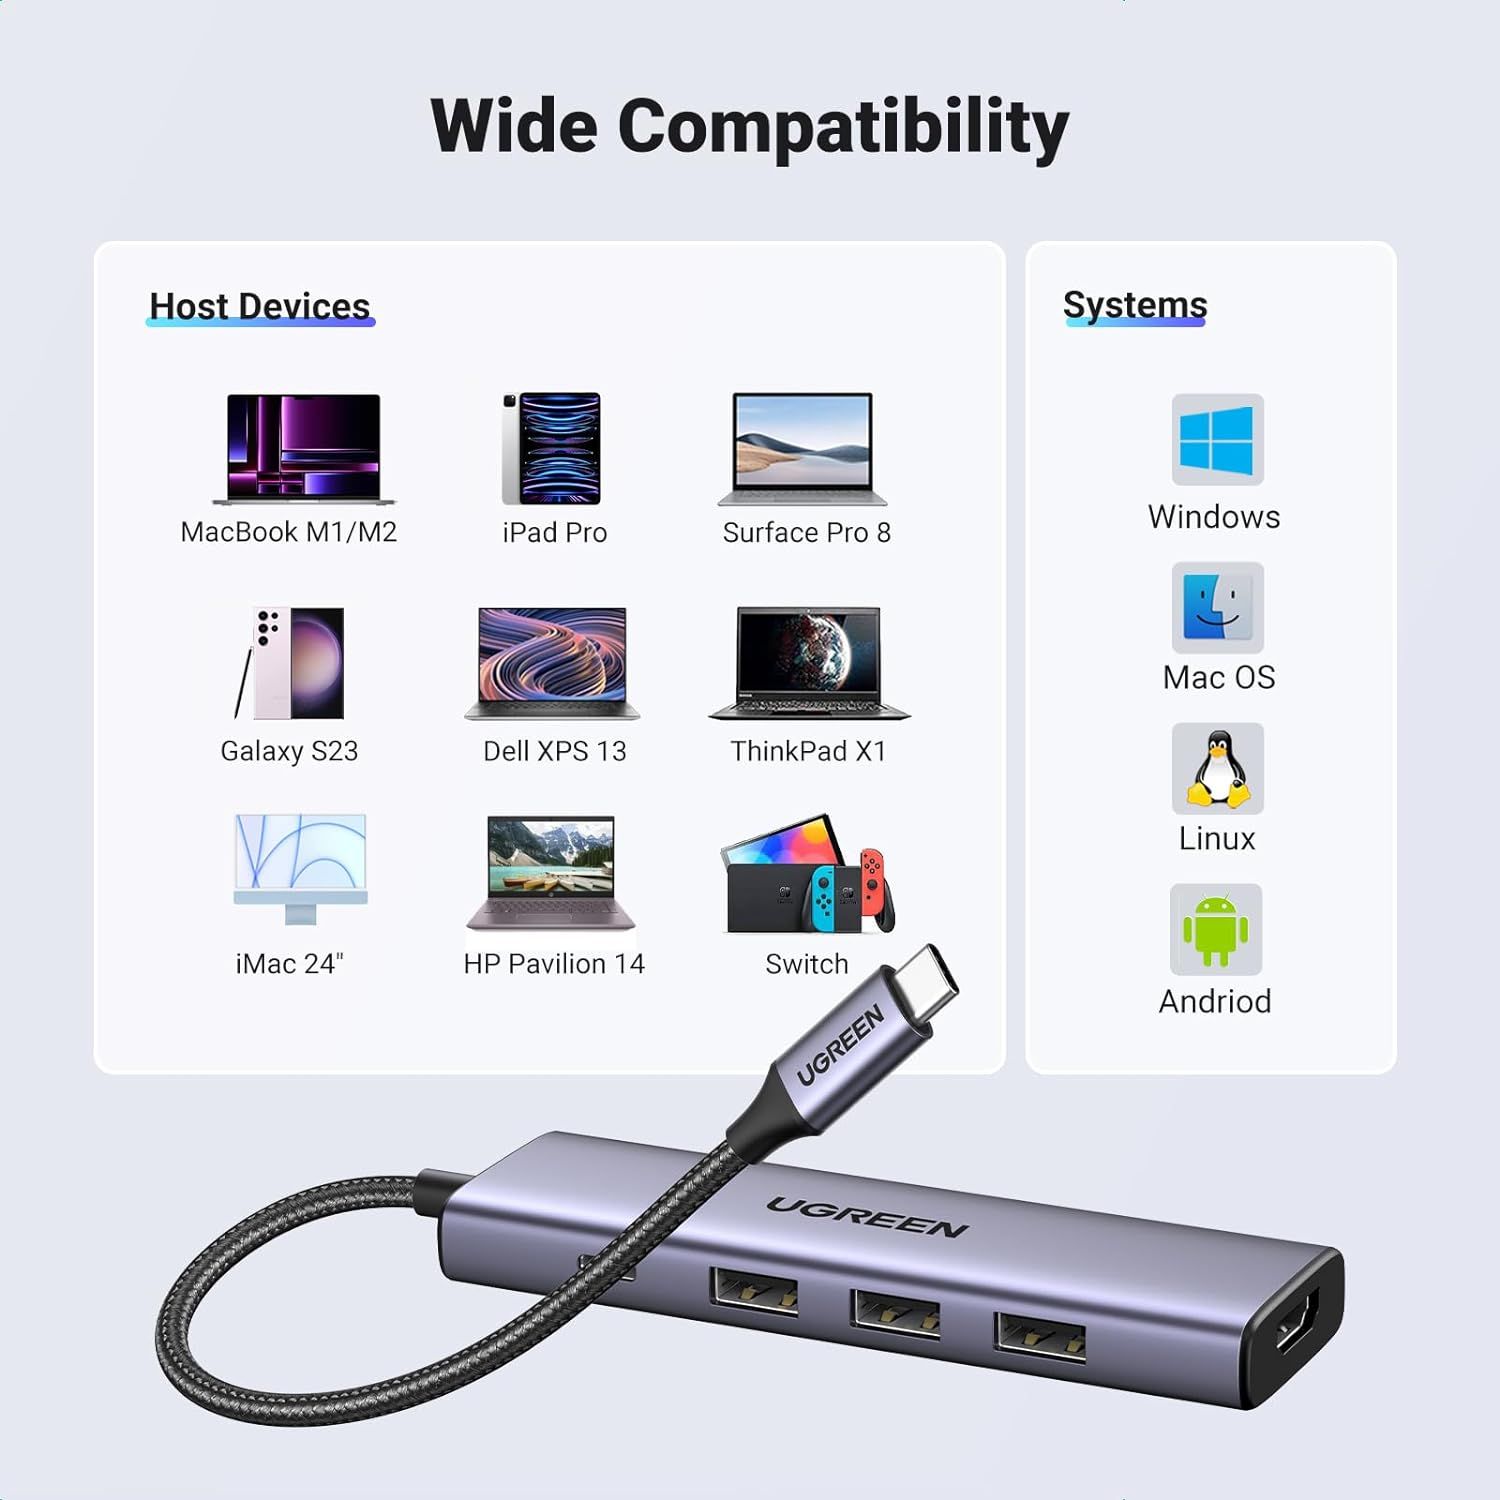 UGREEN Dual HDMI USB HUB 8K HDMI Adapter 10 in 1 Splitter with RJ45 USB 3.0  PD 100W Dock for MacBook Pro Air M2 M1 USB C HUB